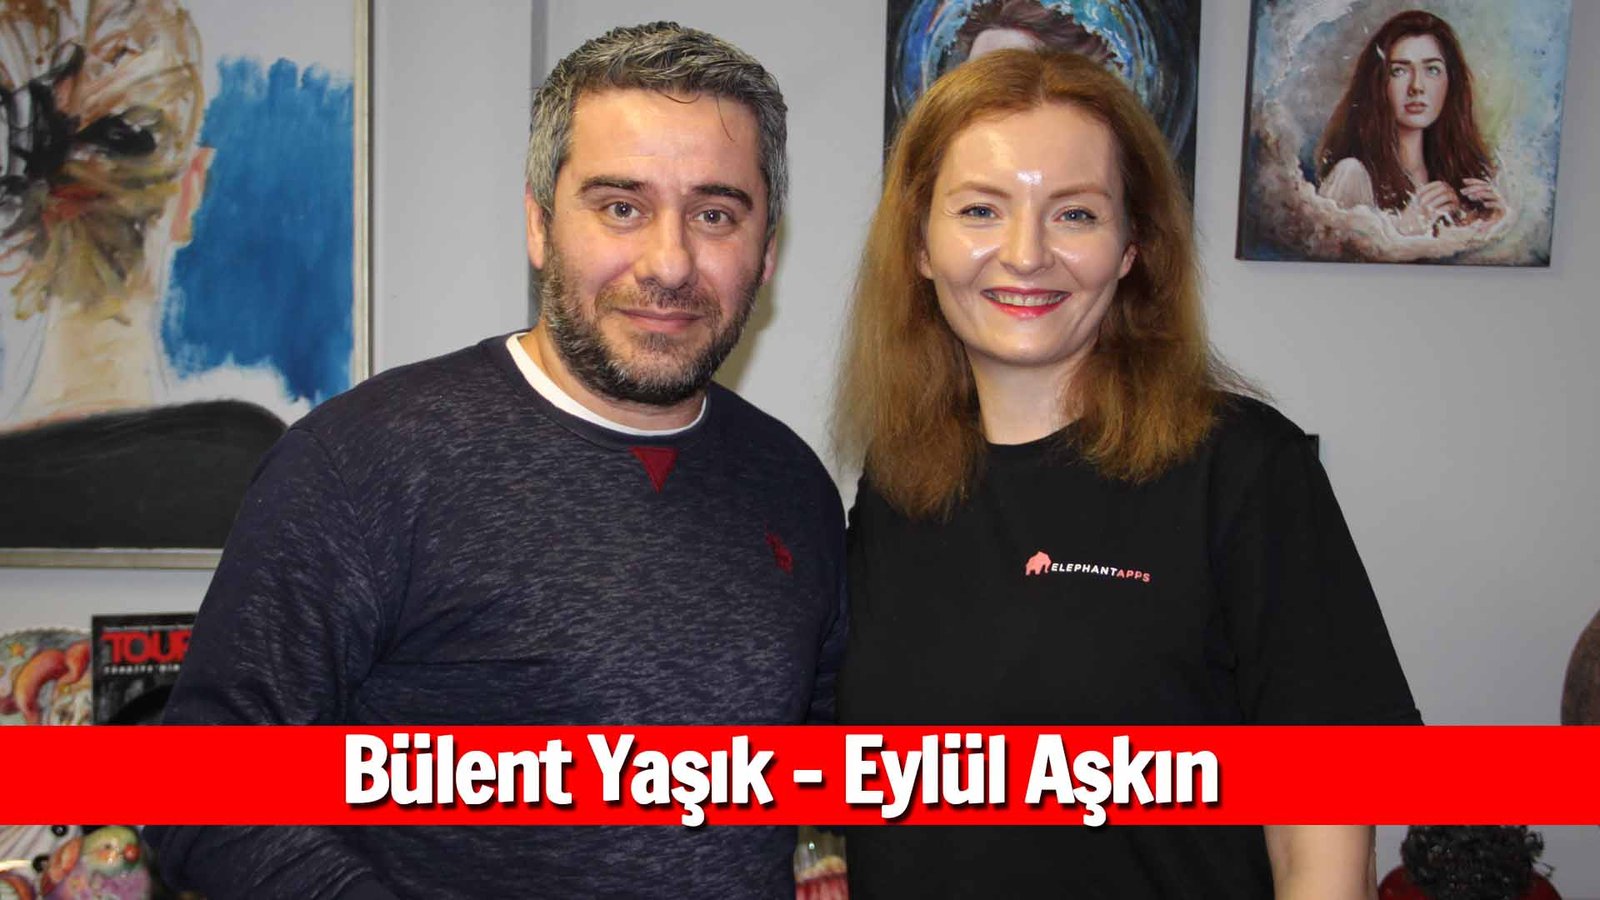 He Met Levent Kırca In A Watch Shop In Eminönü Bülent Yaşık, Eylül Aşkın Interview